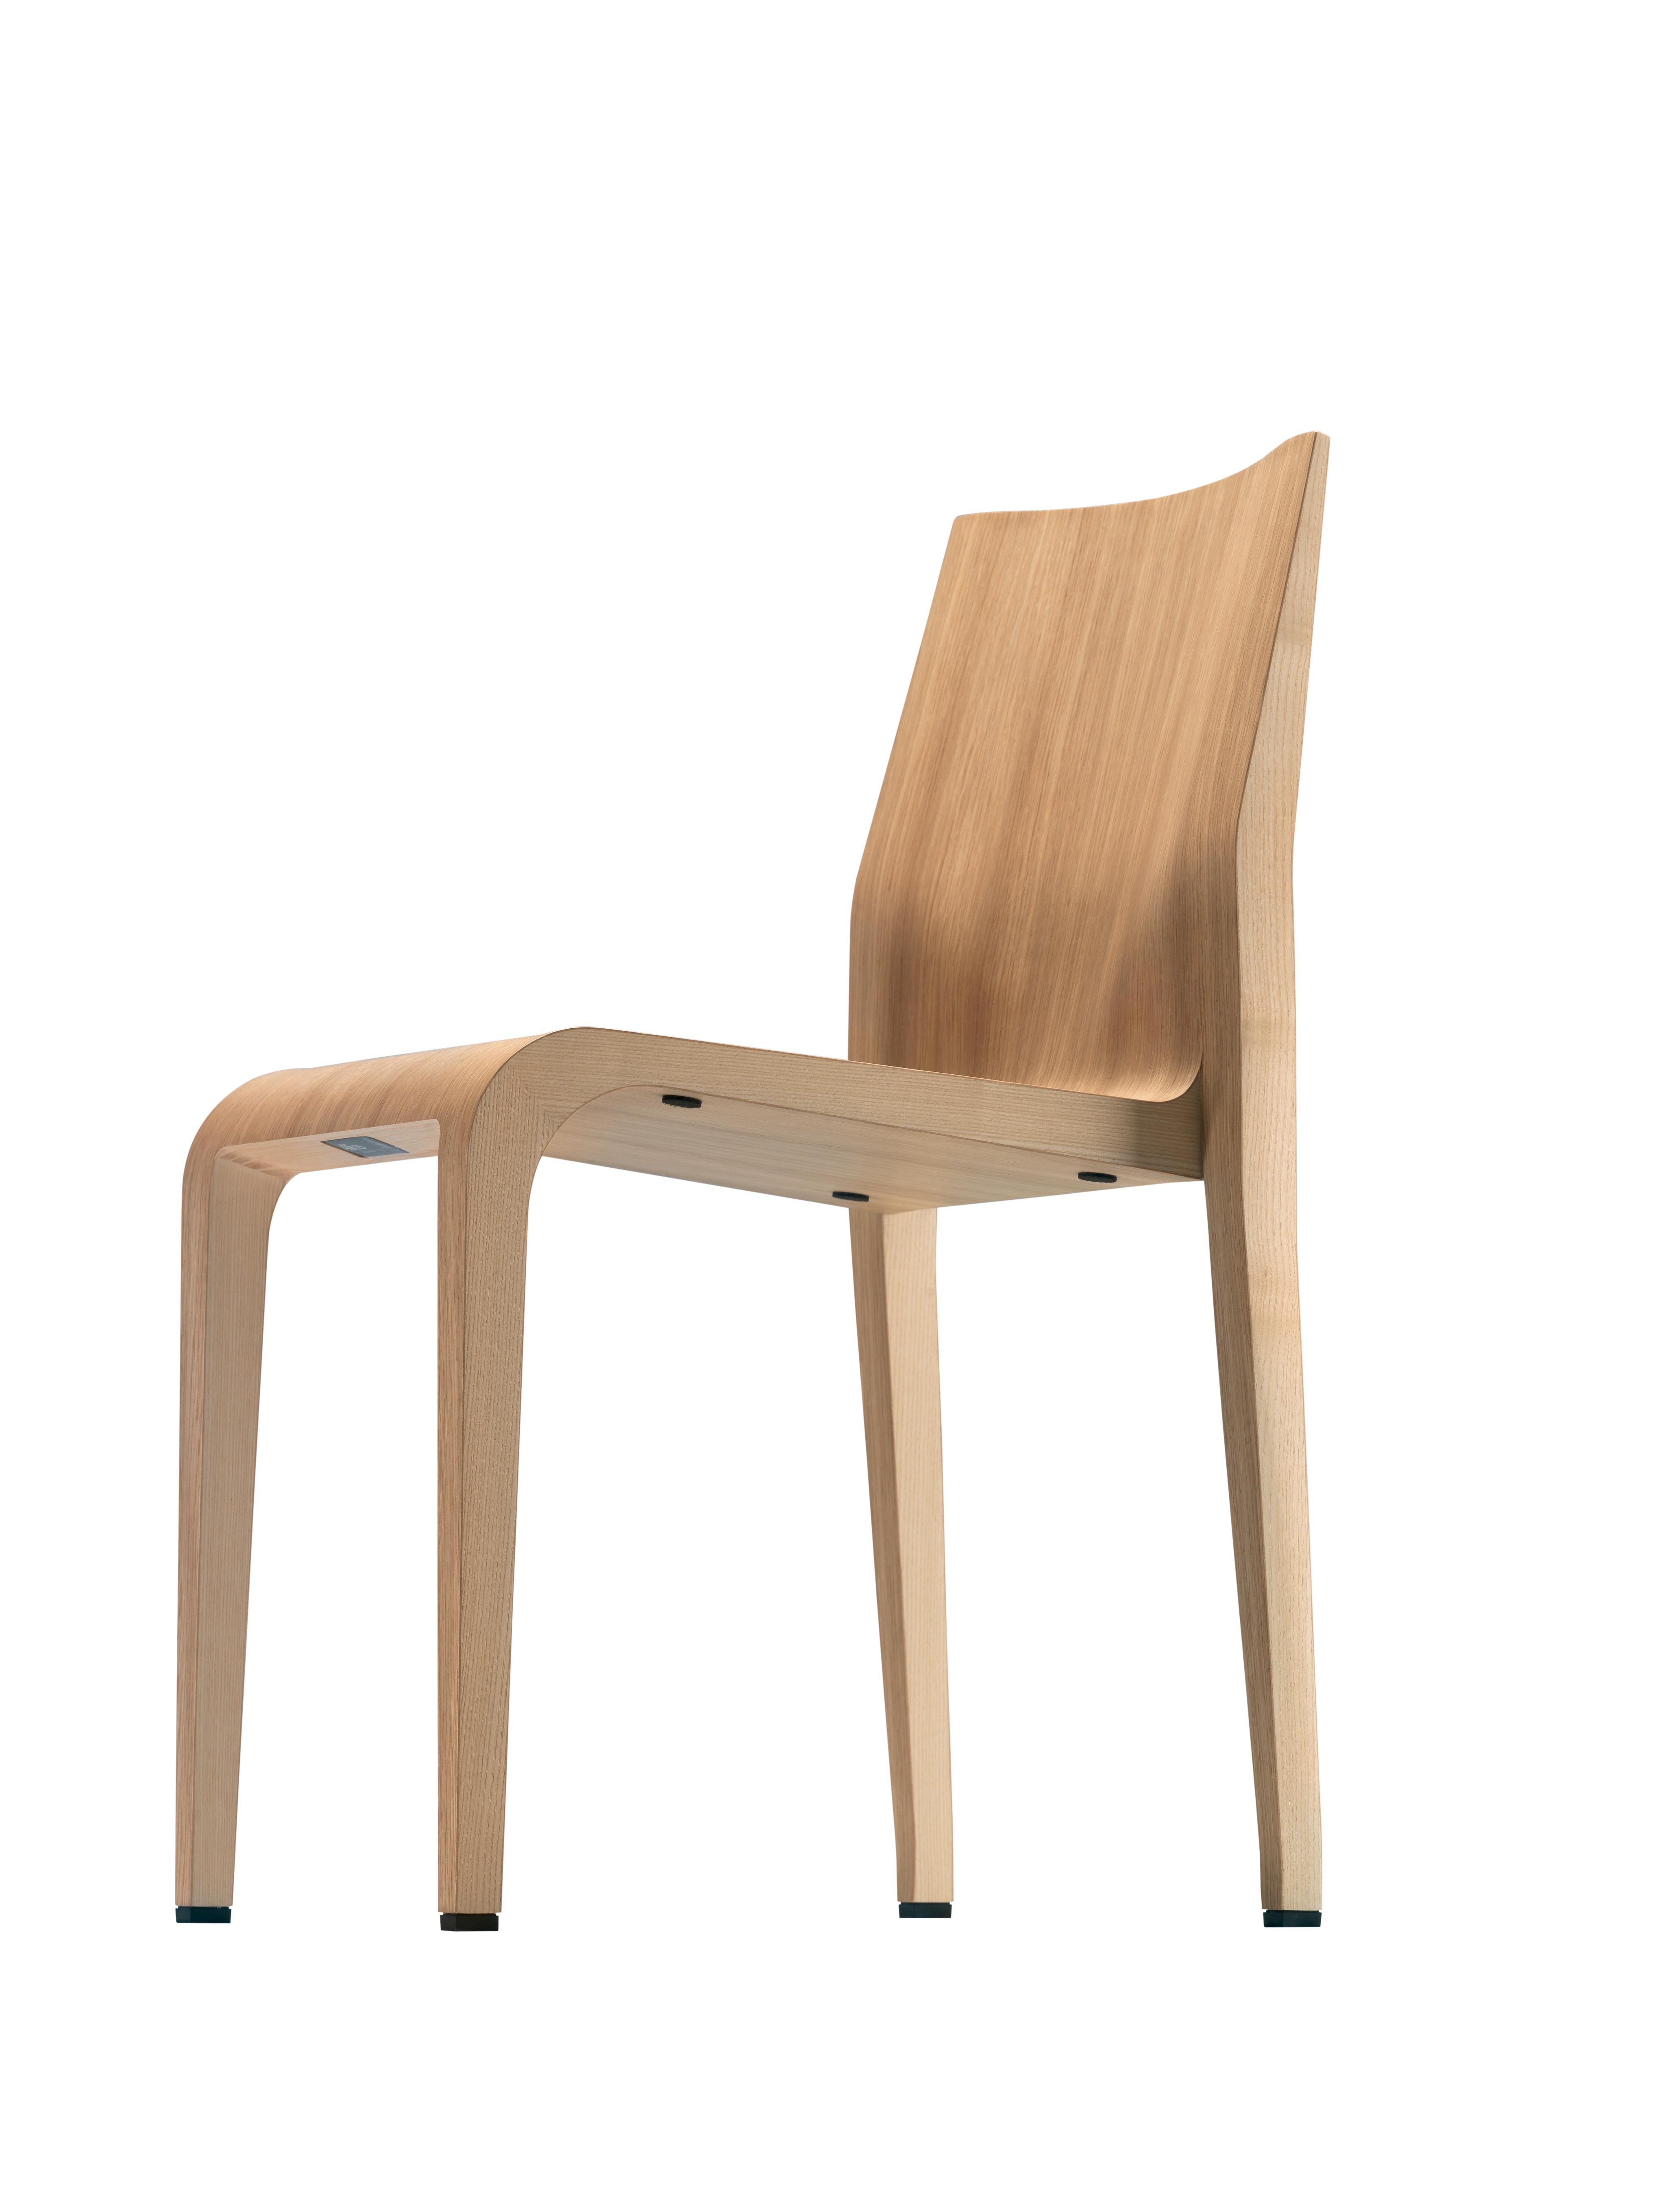 Alias 301 Laleggera Stuhl aus Eichenholz von Riccardo Blumer

Stapelbarer Stuhl mit Struktur aus massivem Ahorn oder Esche. Ahornfurnier oder Eichenfurnier. Interne Stütze aus eingespritztem Polyurethanschaum. Ausführung in transparenter